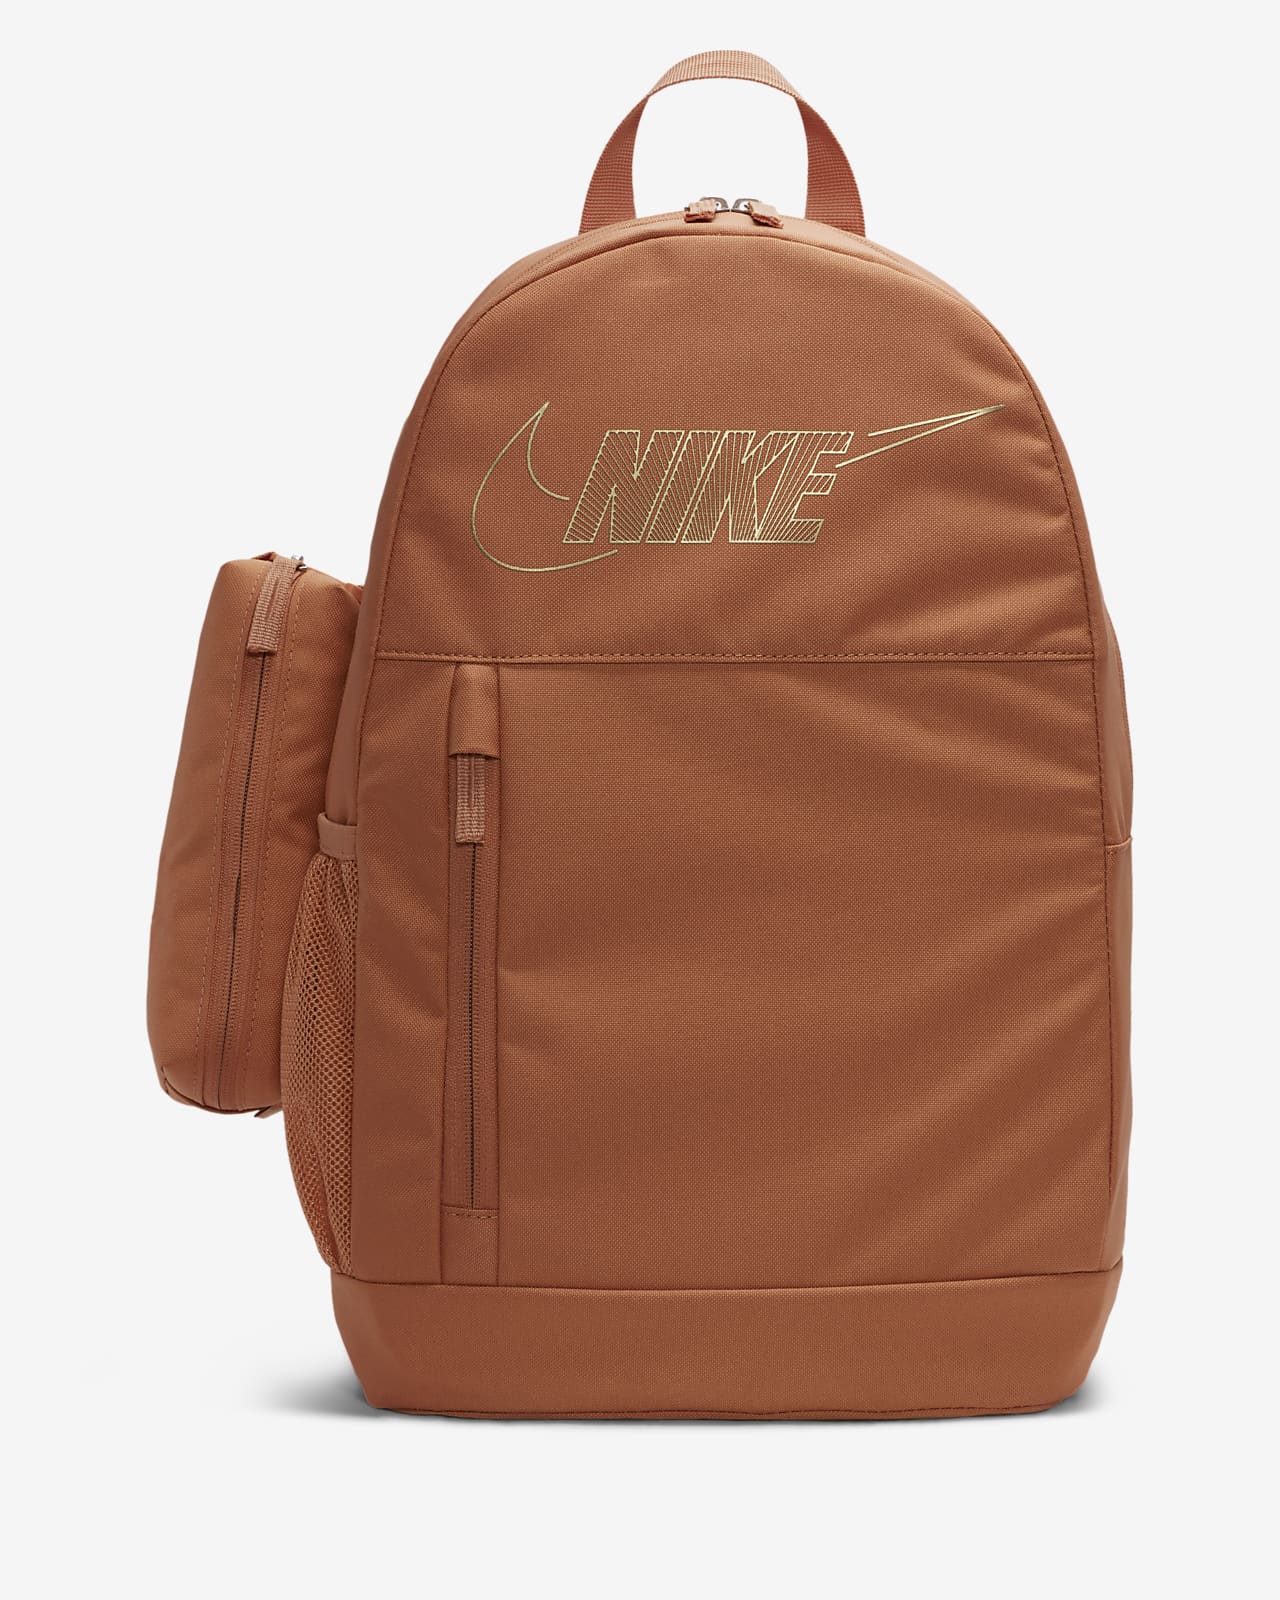 Kids' Nike Air Backpack (20L)